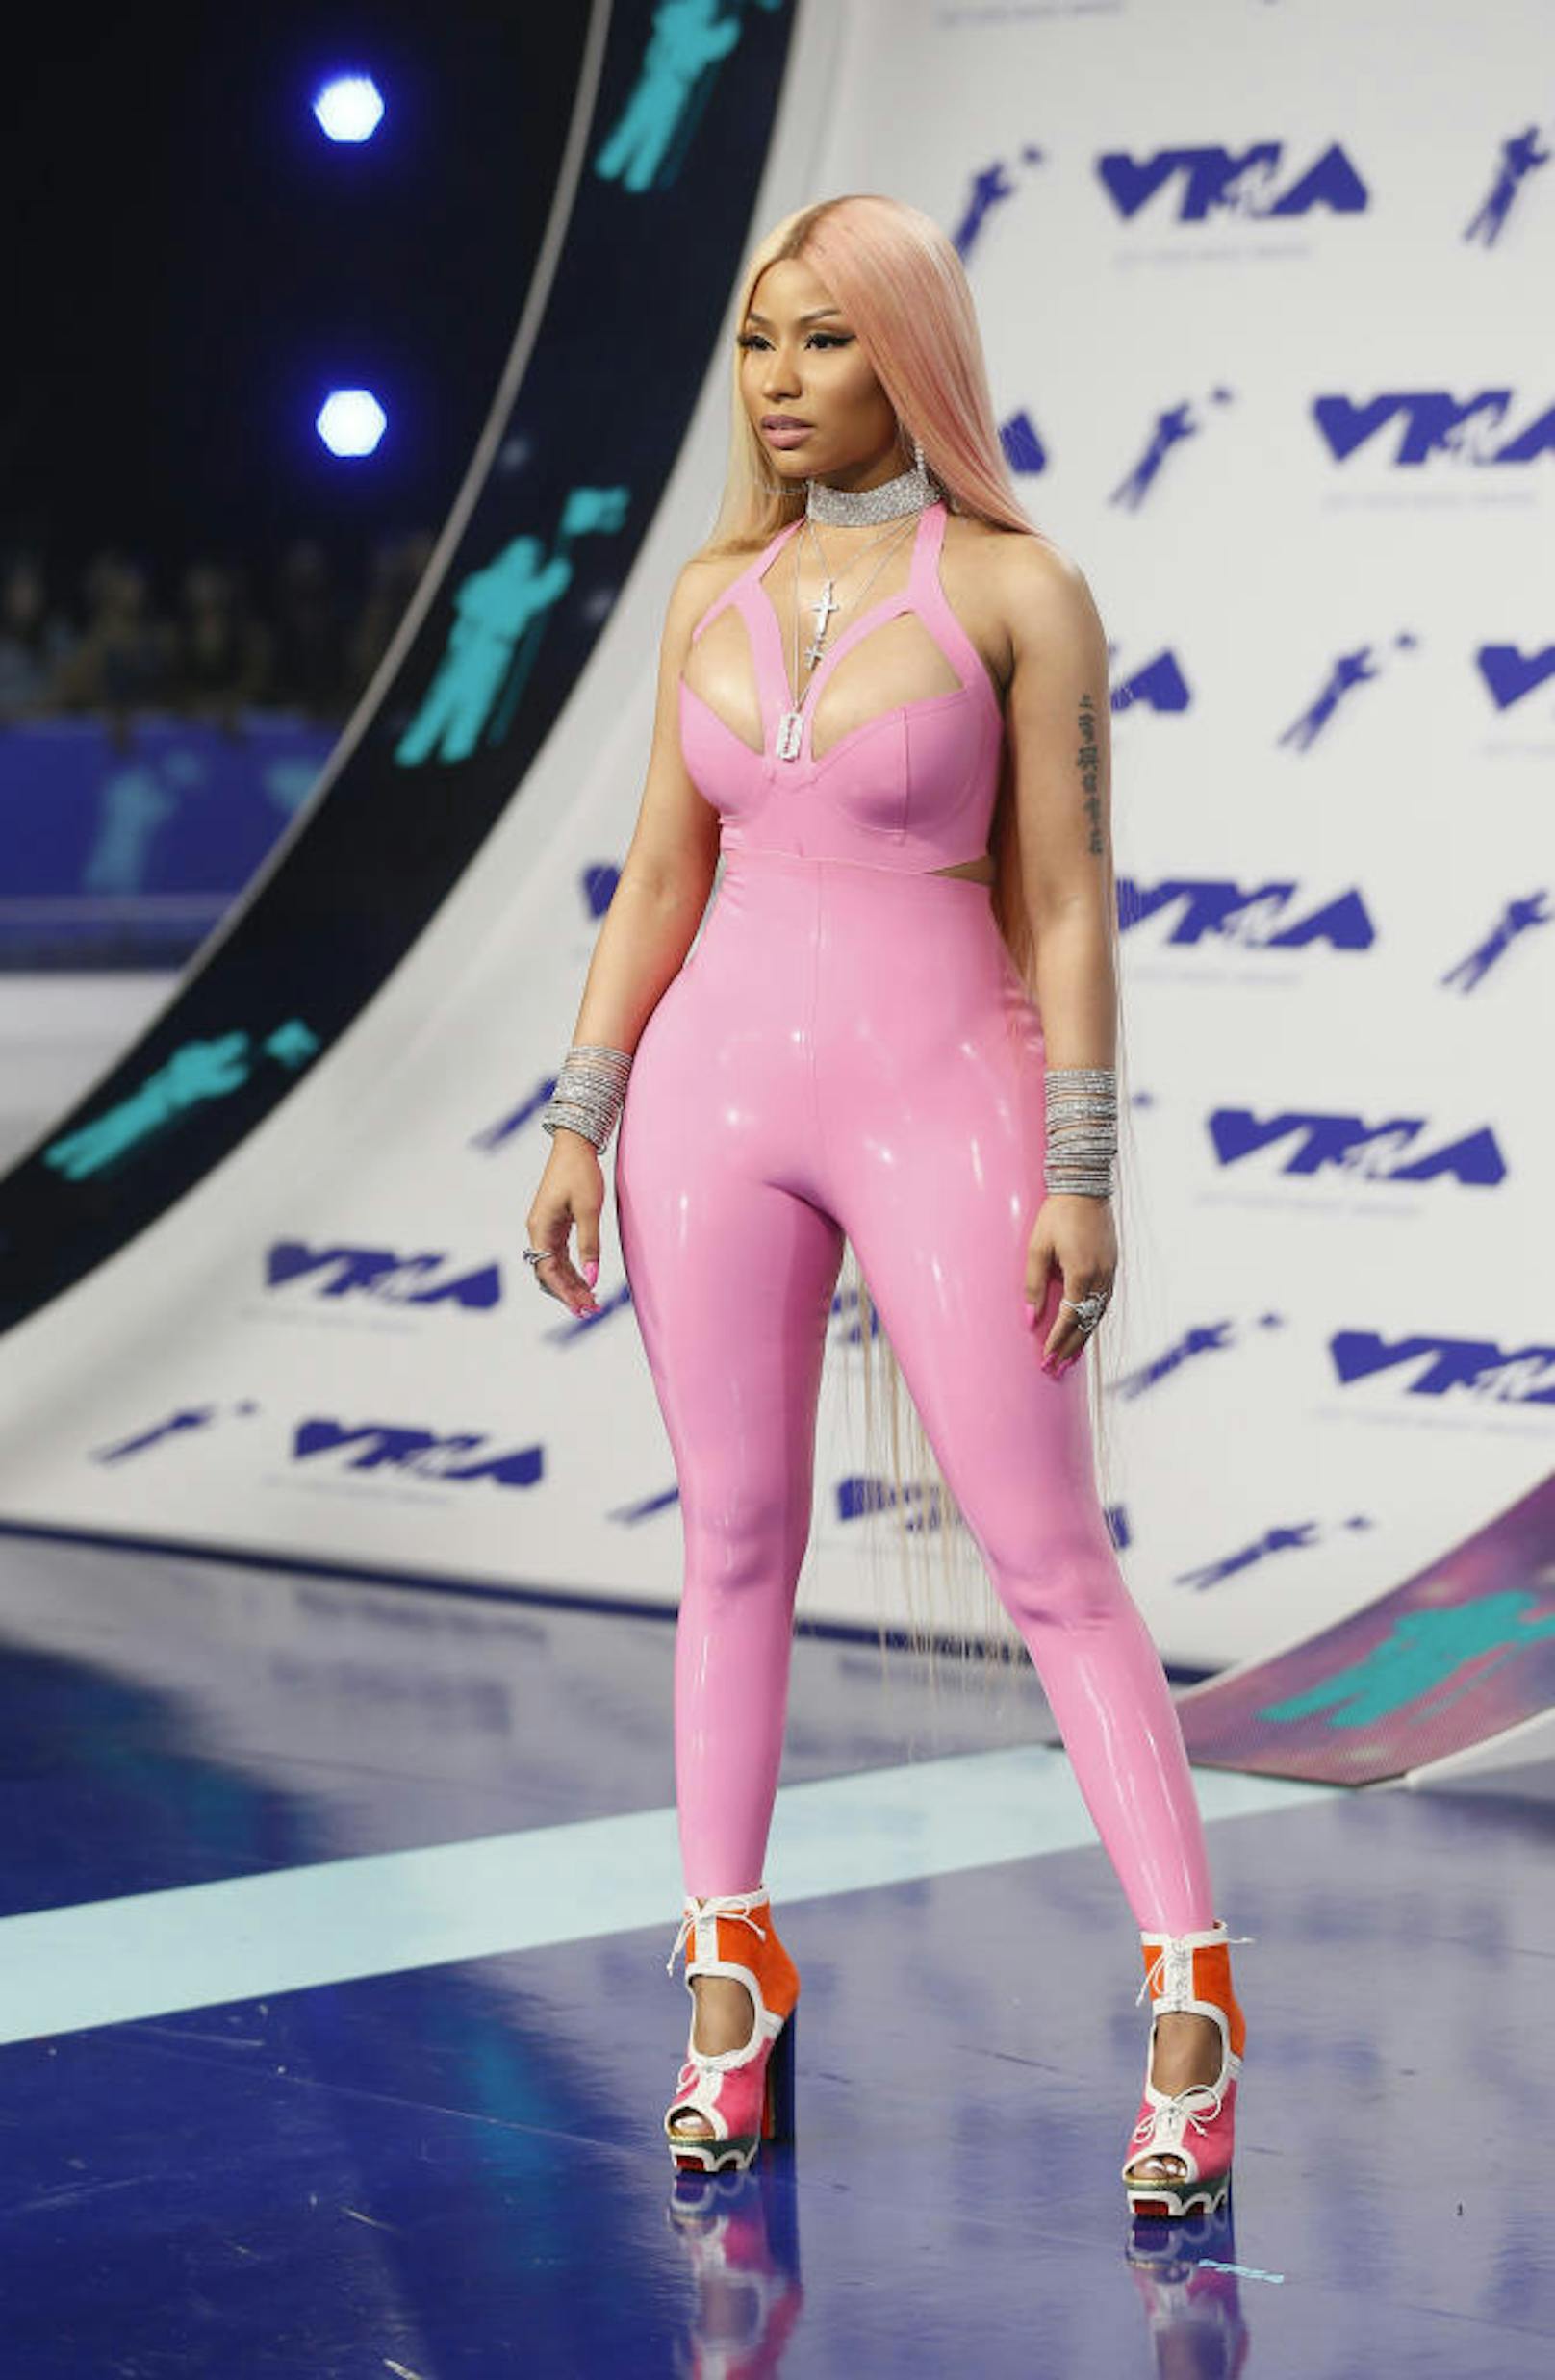 2017 MTV Video Music Awards: Nicki Minaj